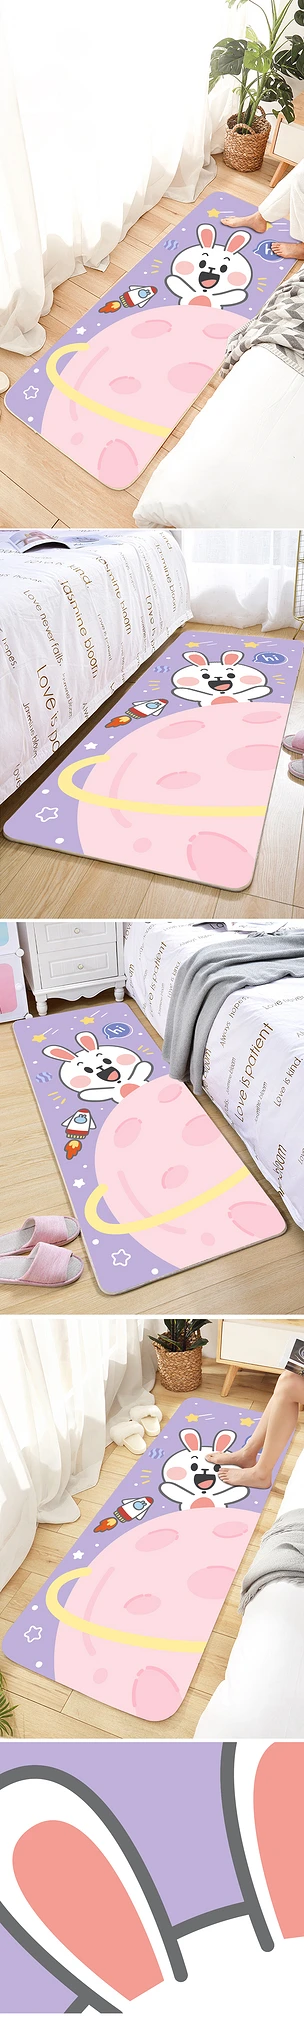 北欧卡通星球火箭可爱兔子儿童房床边毯长条地毯